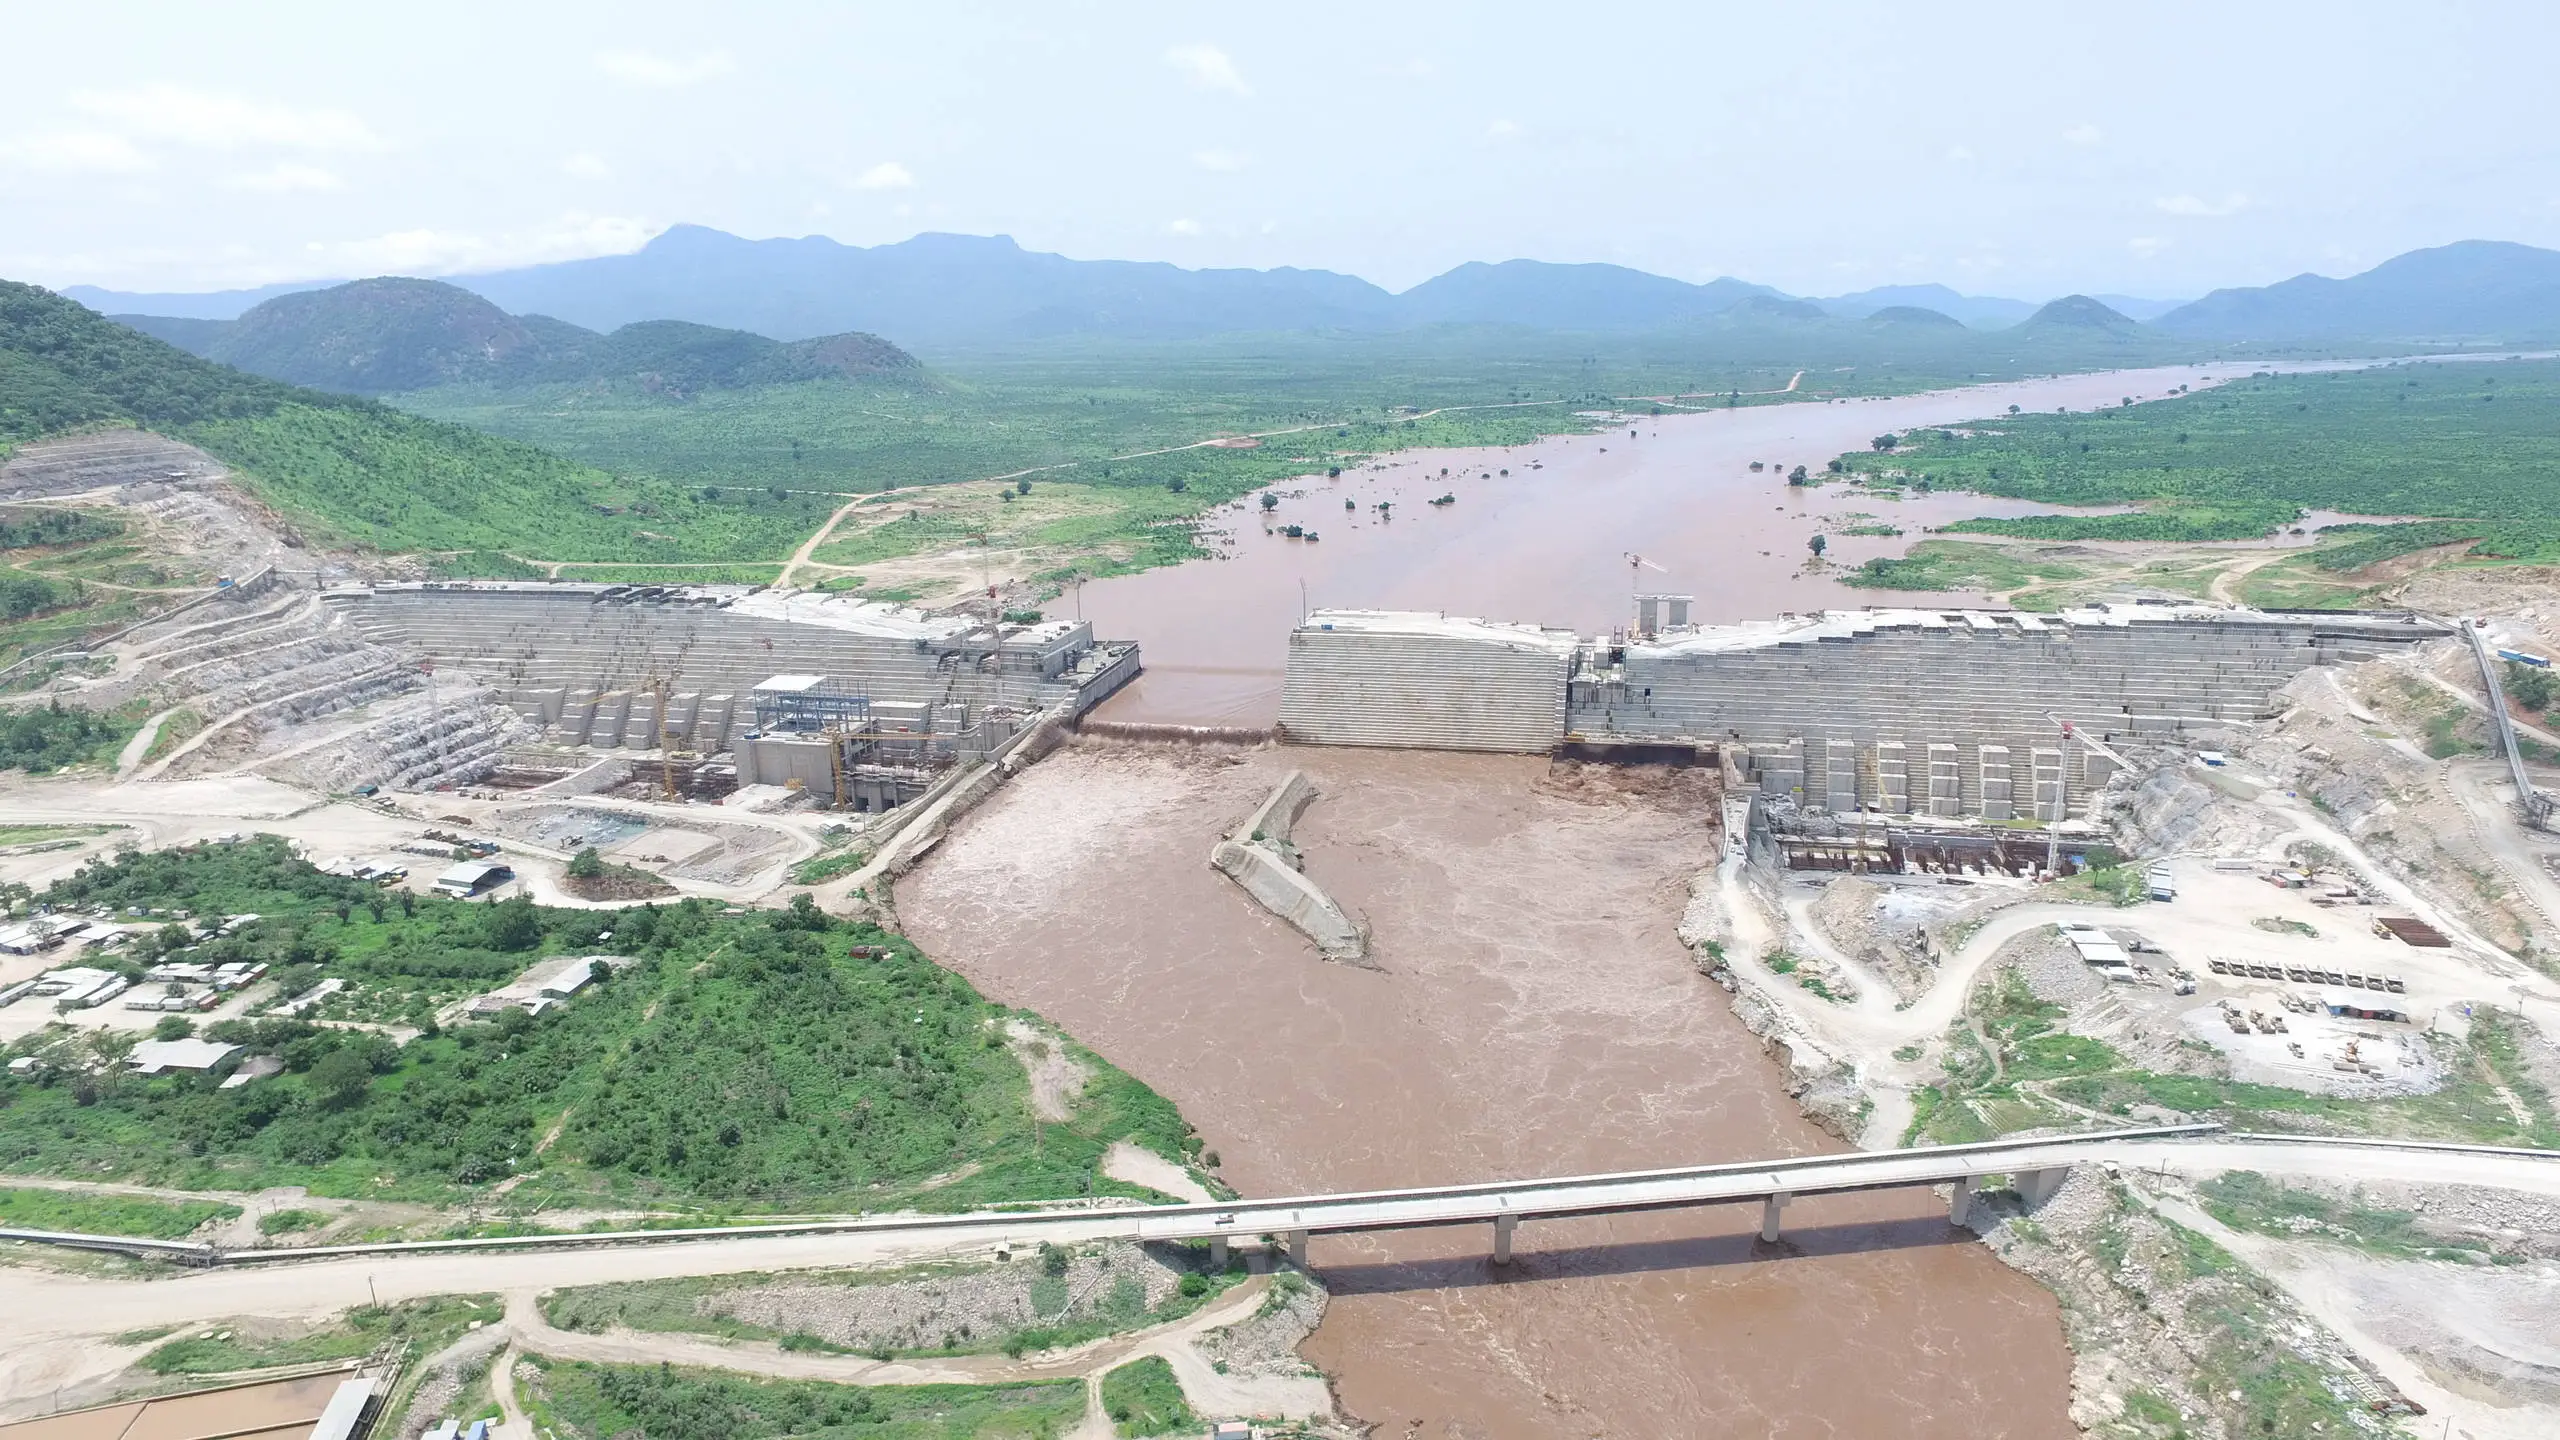 biggest dams in Africa - Grand Renaissance Dam - Ethiopia